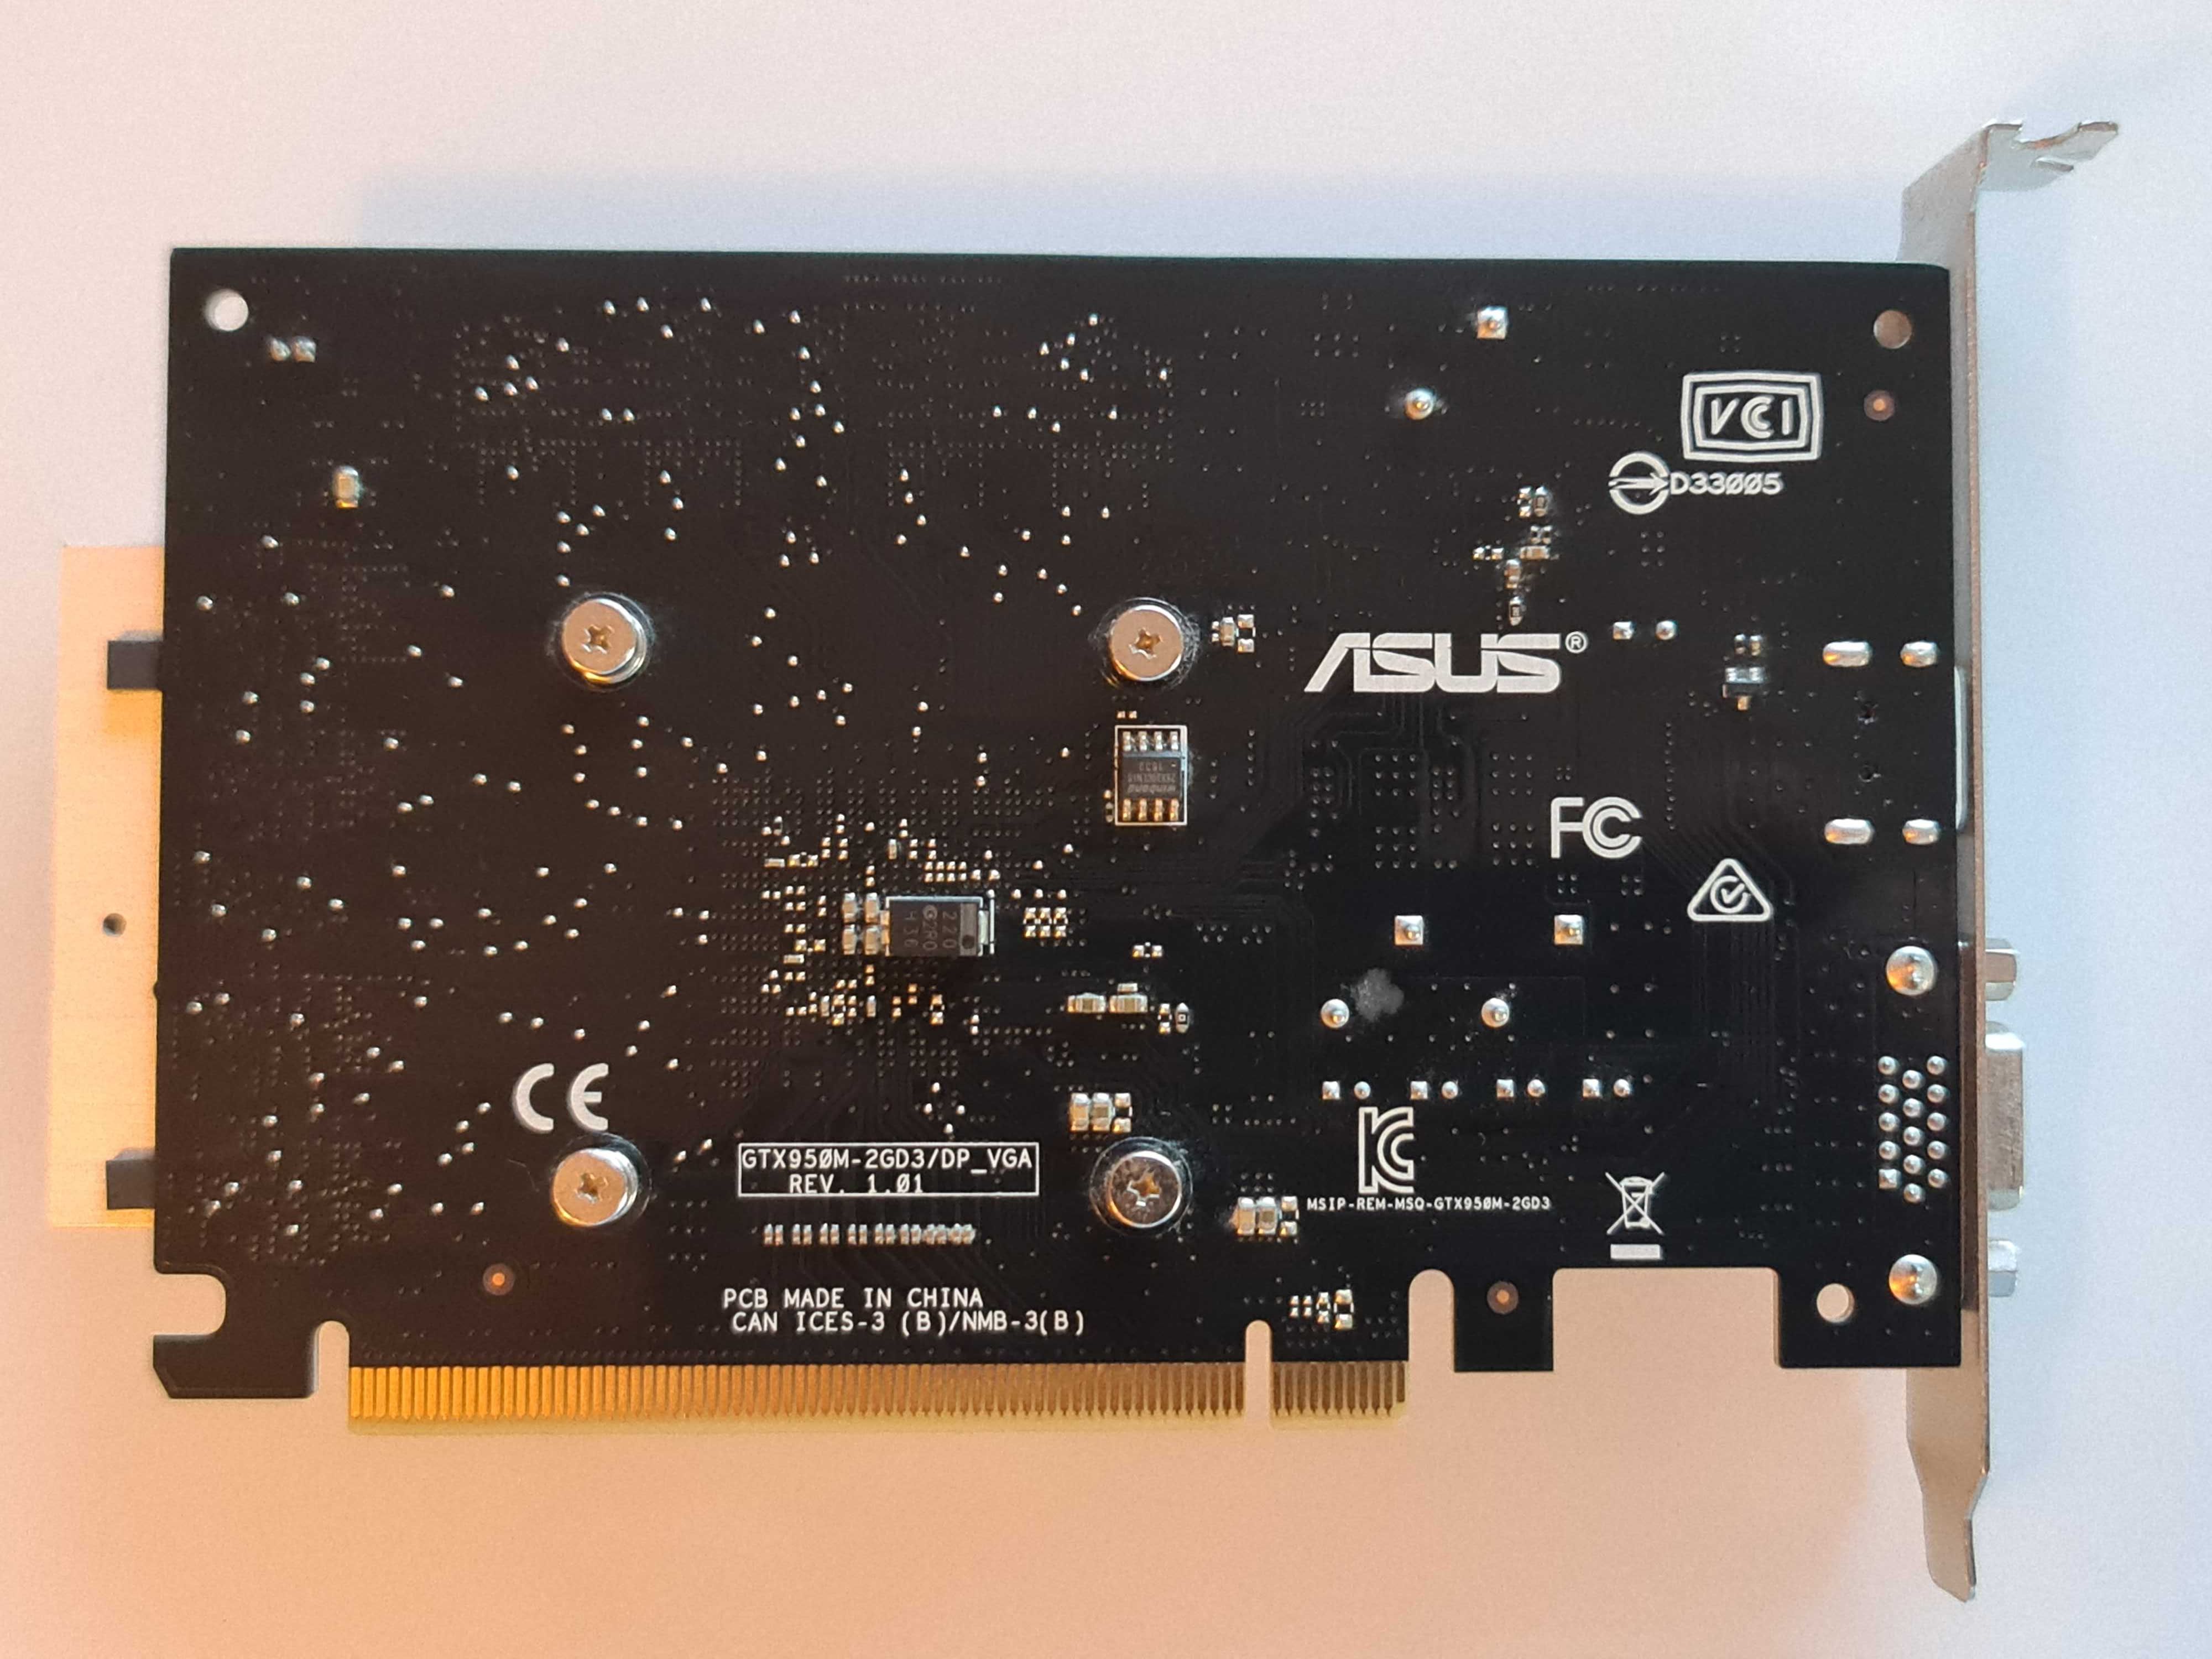 placa gráfica Asus GTX950M-2GD3/DP VGA Nova